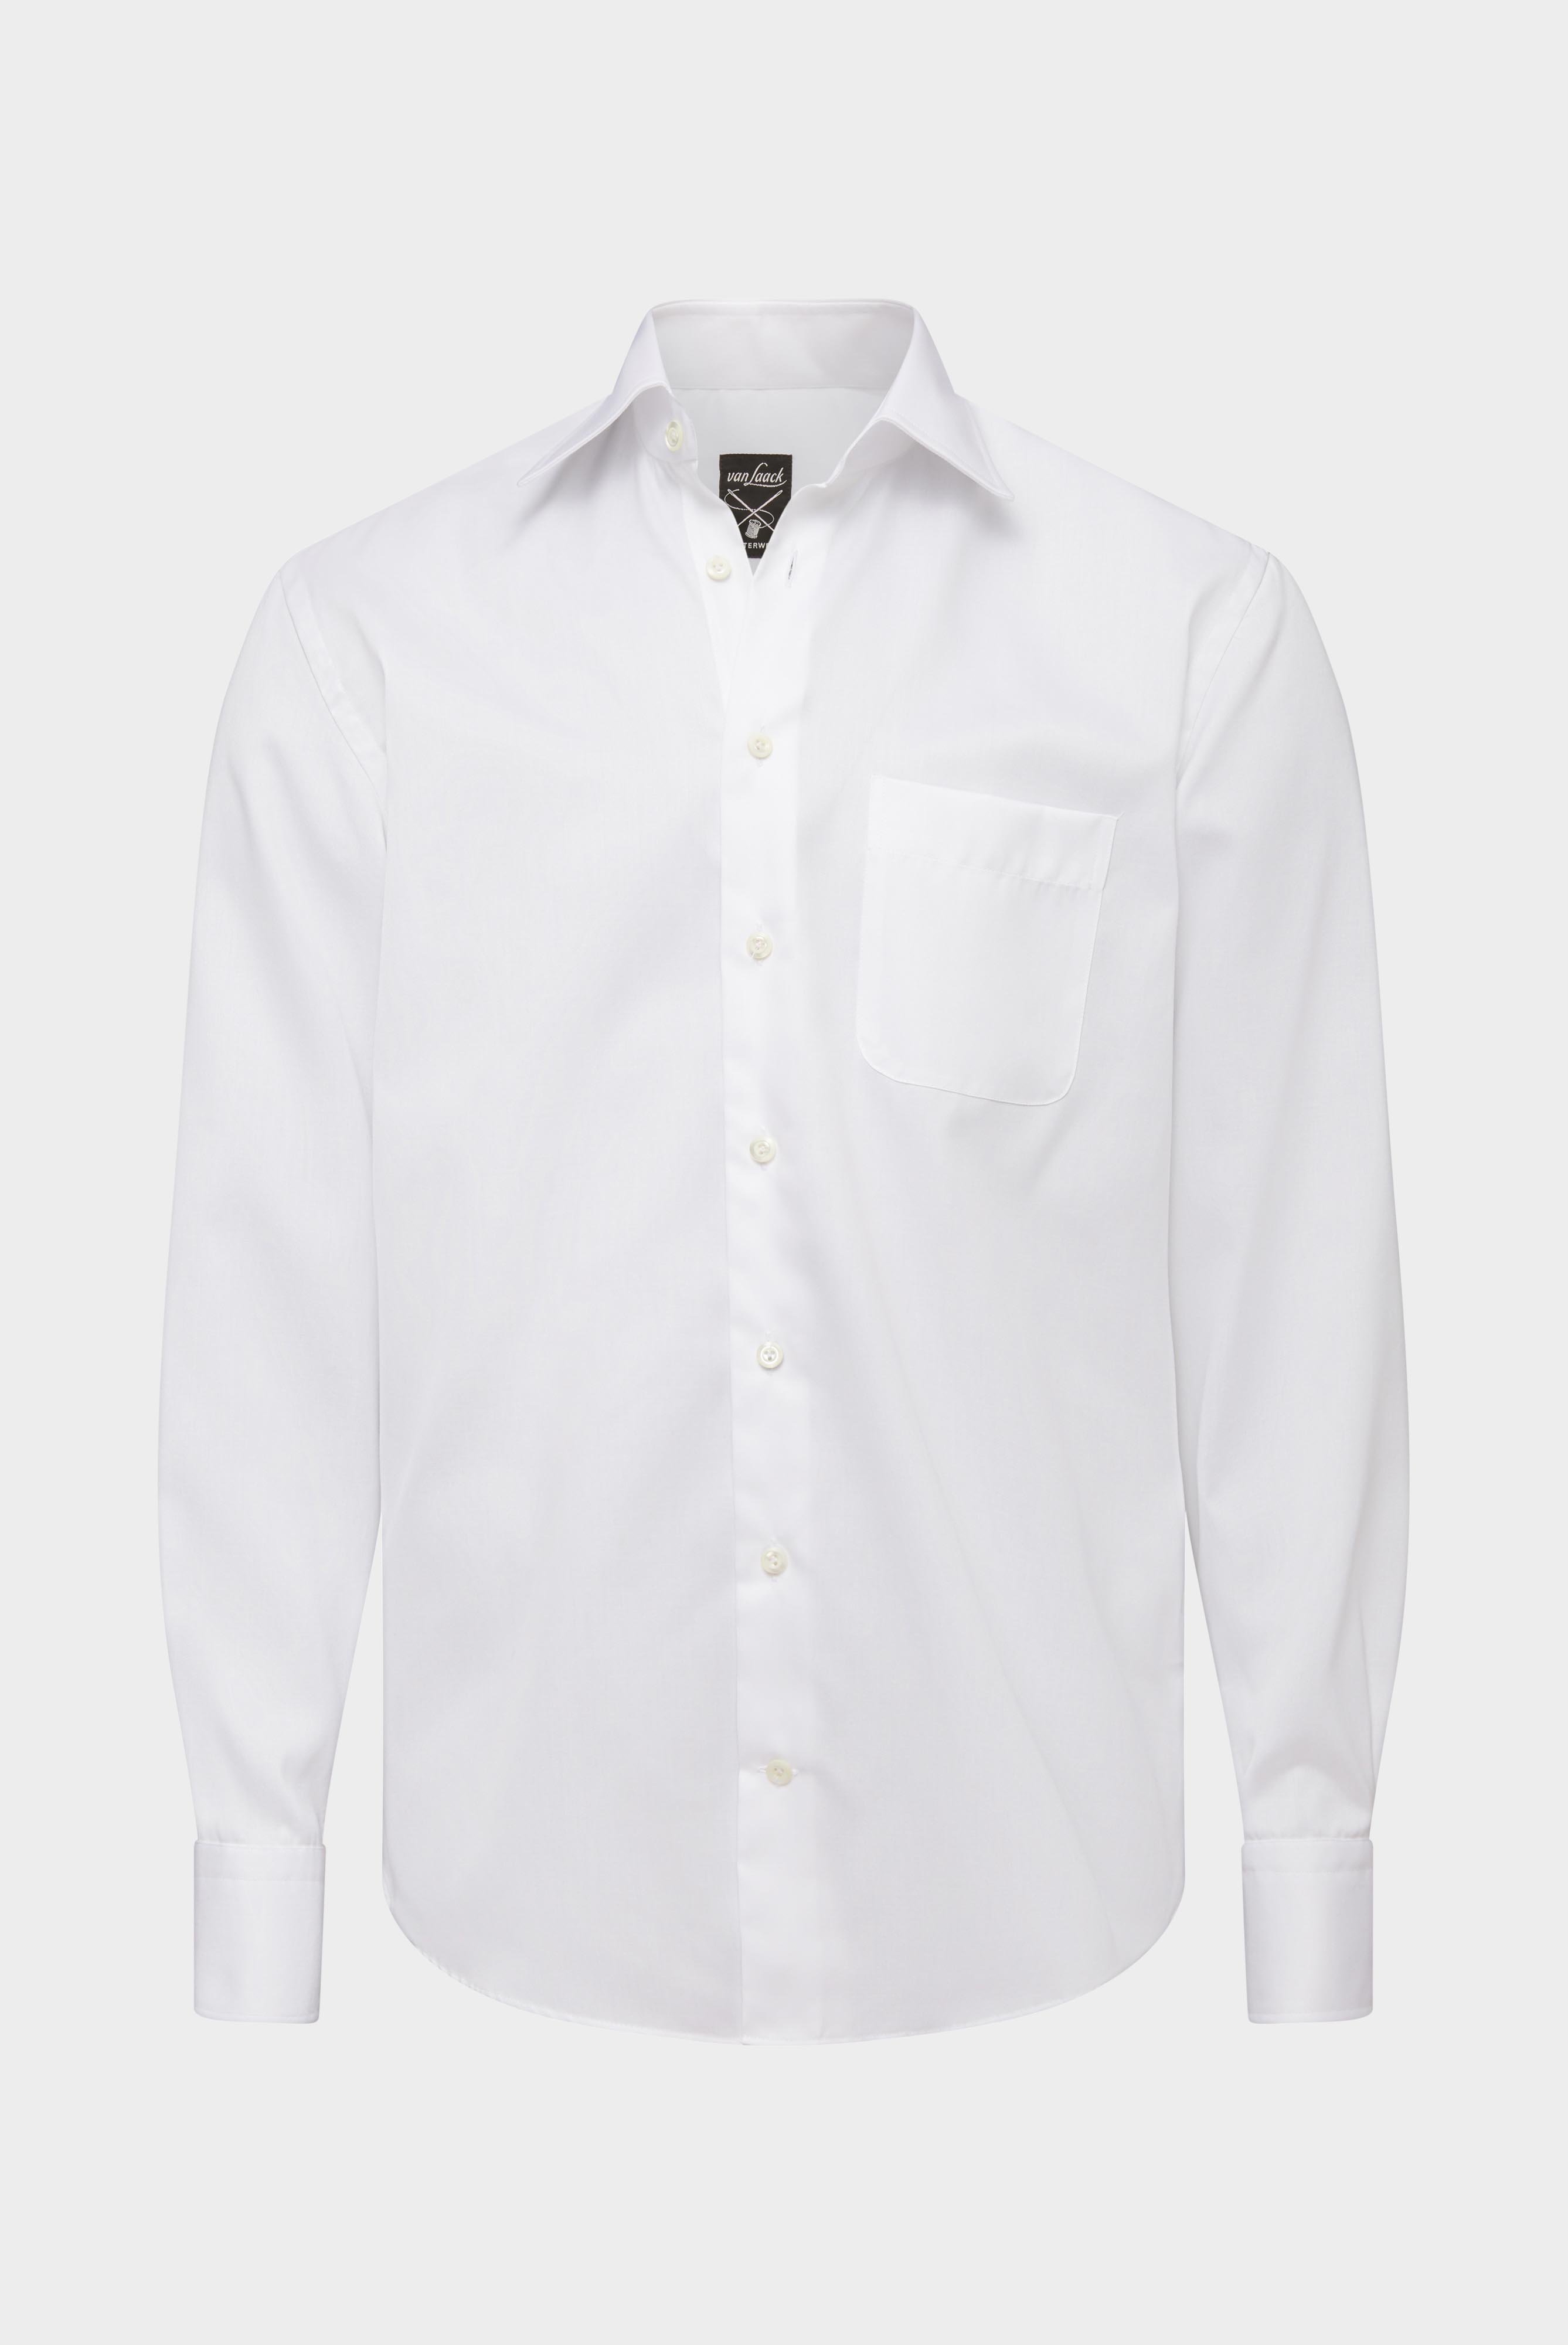 Bügelleichte Hemden+Bügelfreies Twill Hemd Comfort Fit+20.2046.BQ.132241.000.38